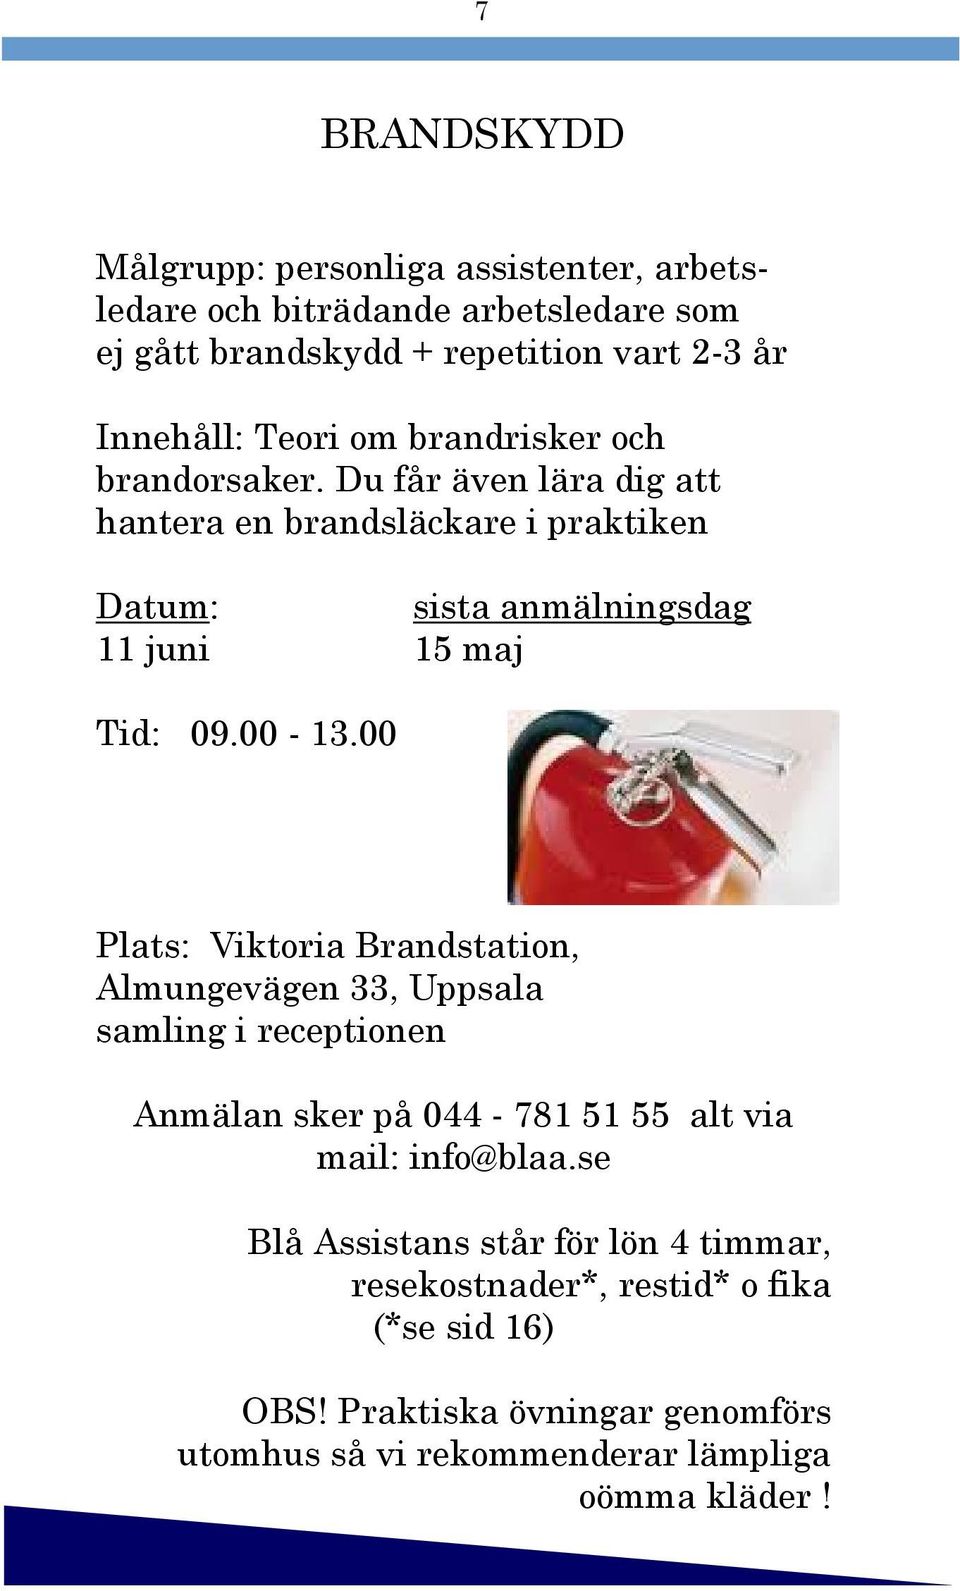 00 Plats: Viktoria Brandstation, Almungevägen 33, Uppsala samling i receptionen Anmälan sker på 044-781 51 55 alt via mail: info@blaa.